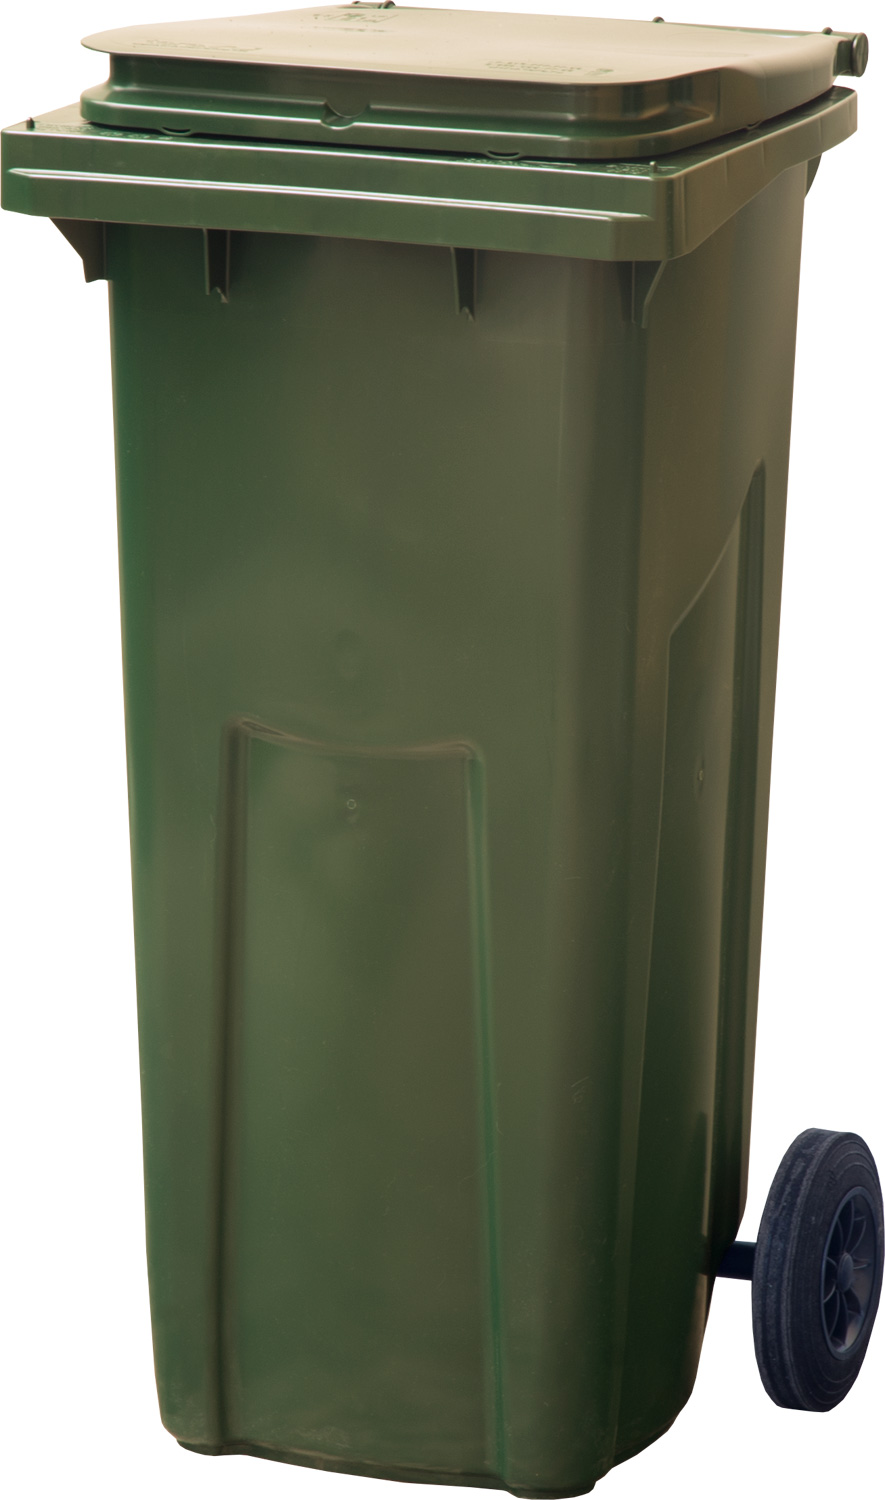 Мусорный контейнер МКТ 120 зеленый 550x480x960 мм Полиэтилен низкого давления (HDPE) 120 л